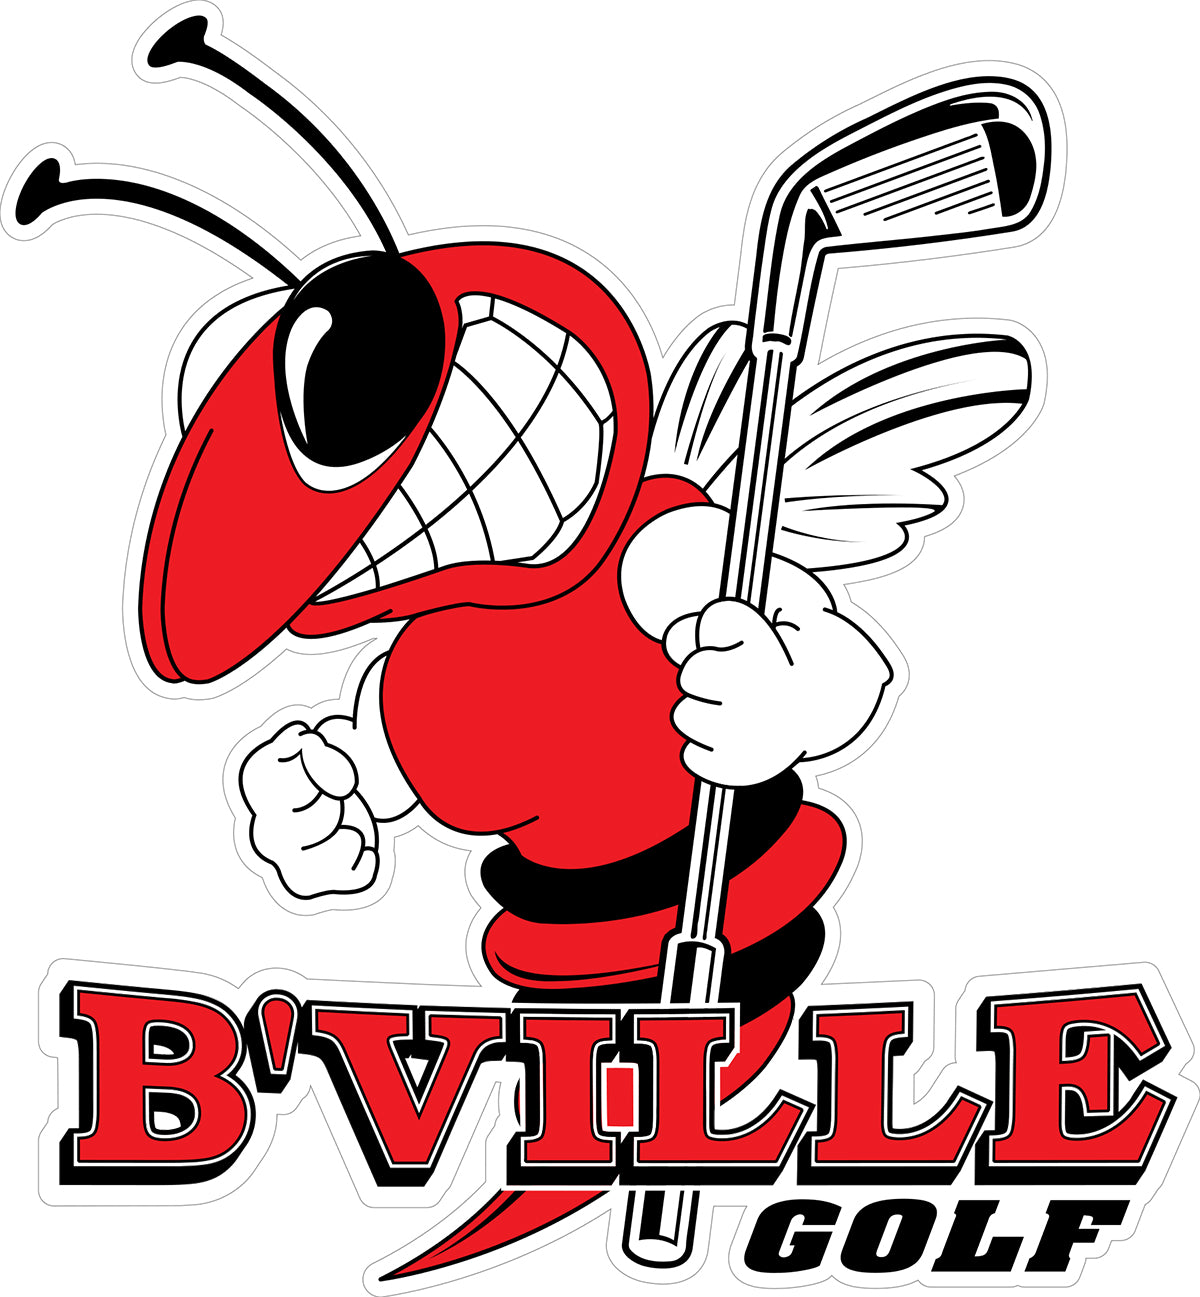 B'Ville Golf Bee